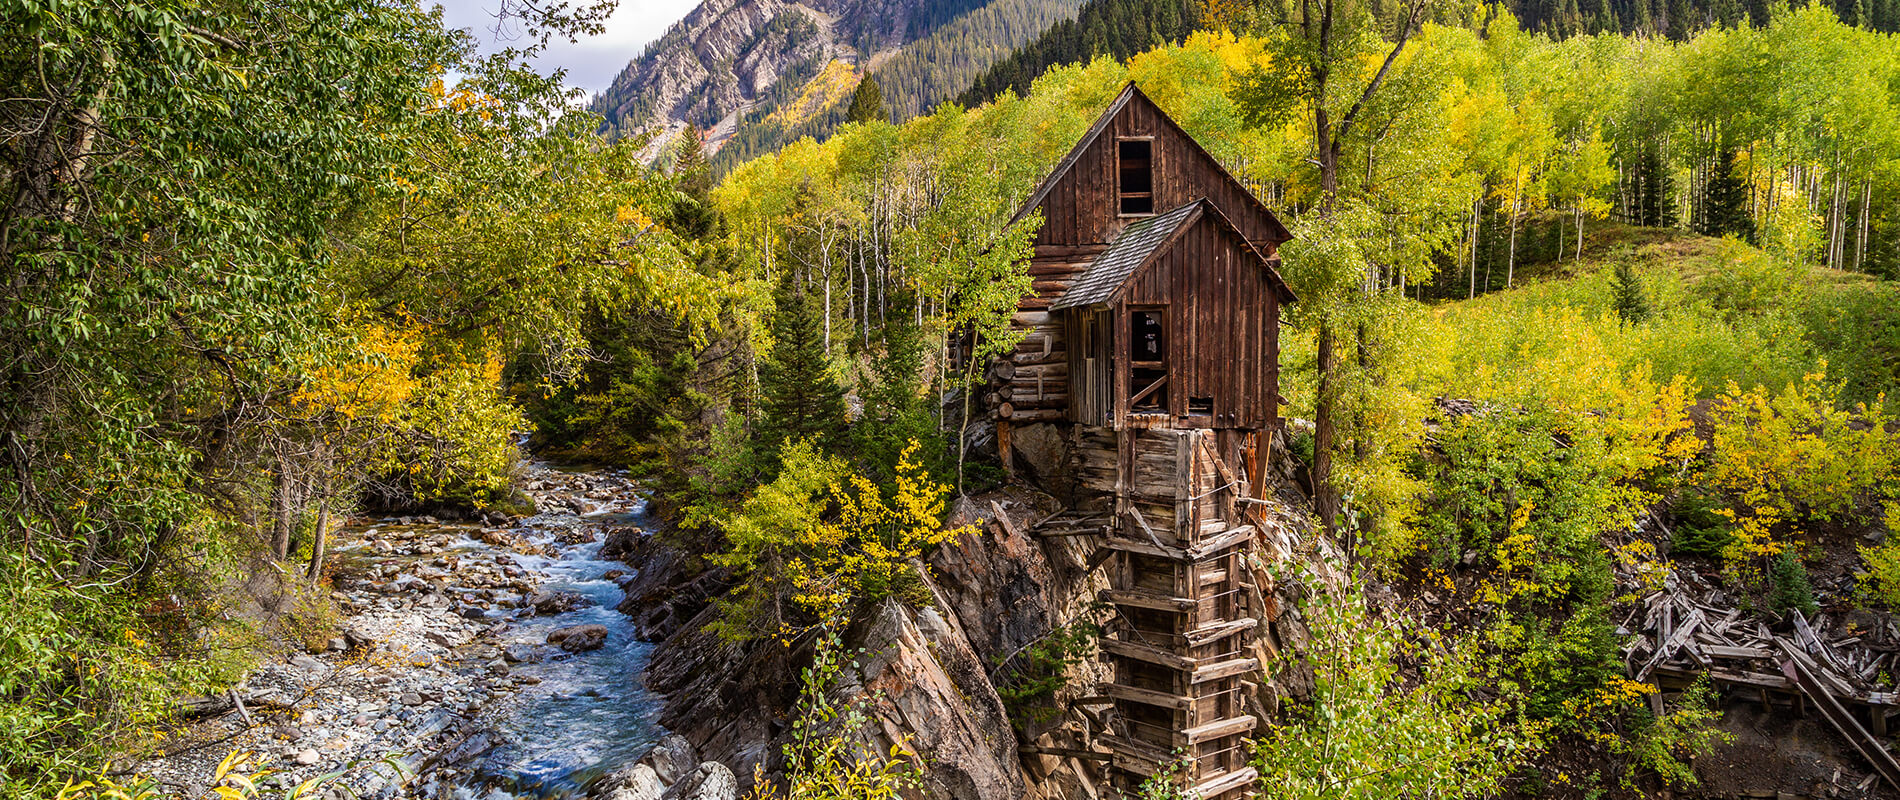 Crystal Mill, tesoro nascosto tra le montagne del Colorado